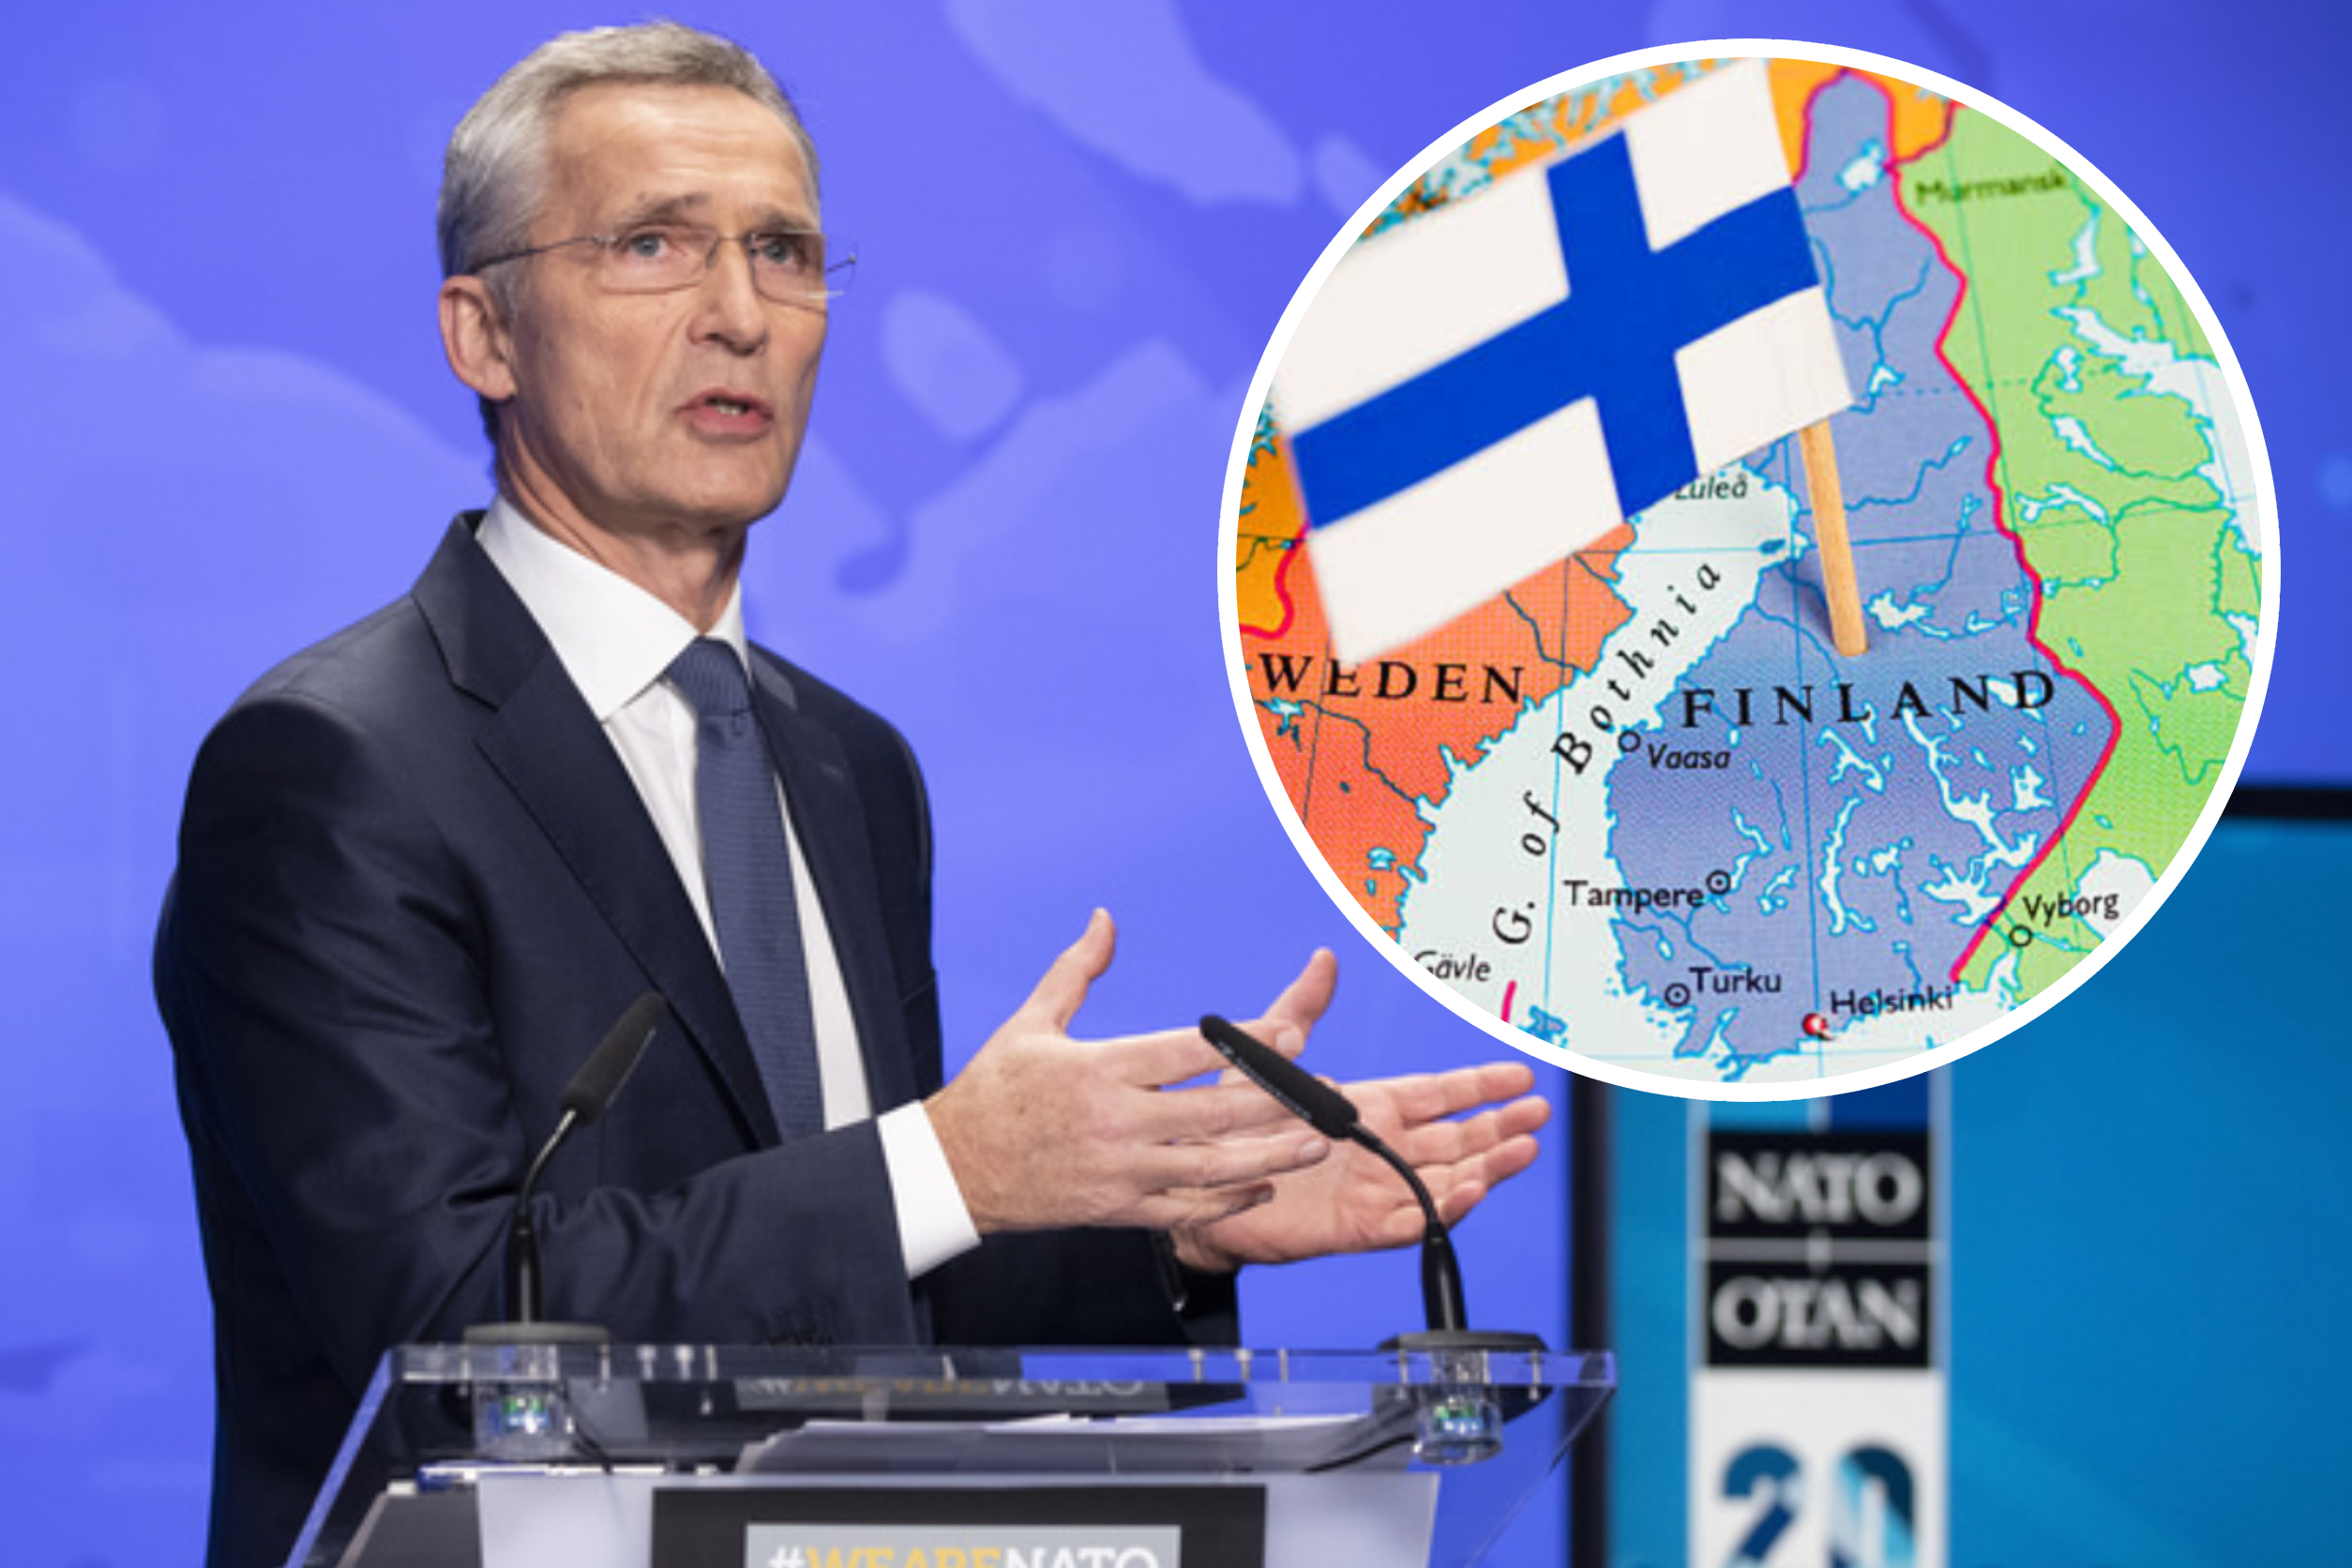 Vestea Zilei! Finlanda devine membră NATO începând de marți. VIDEO